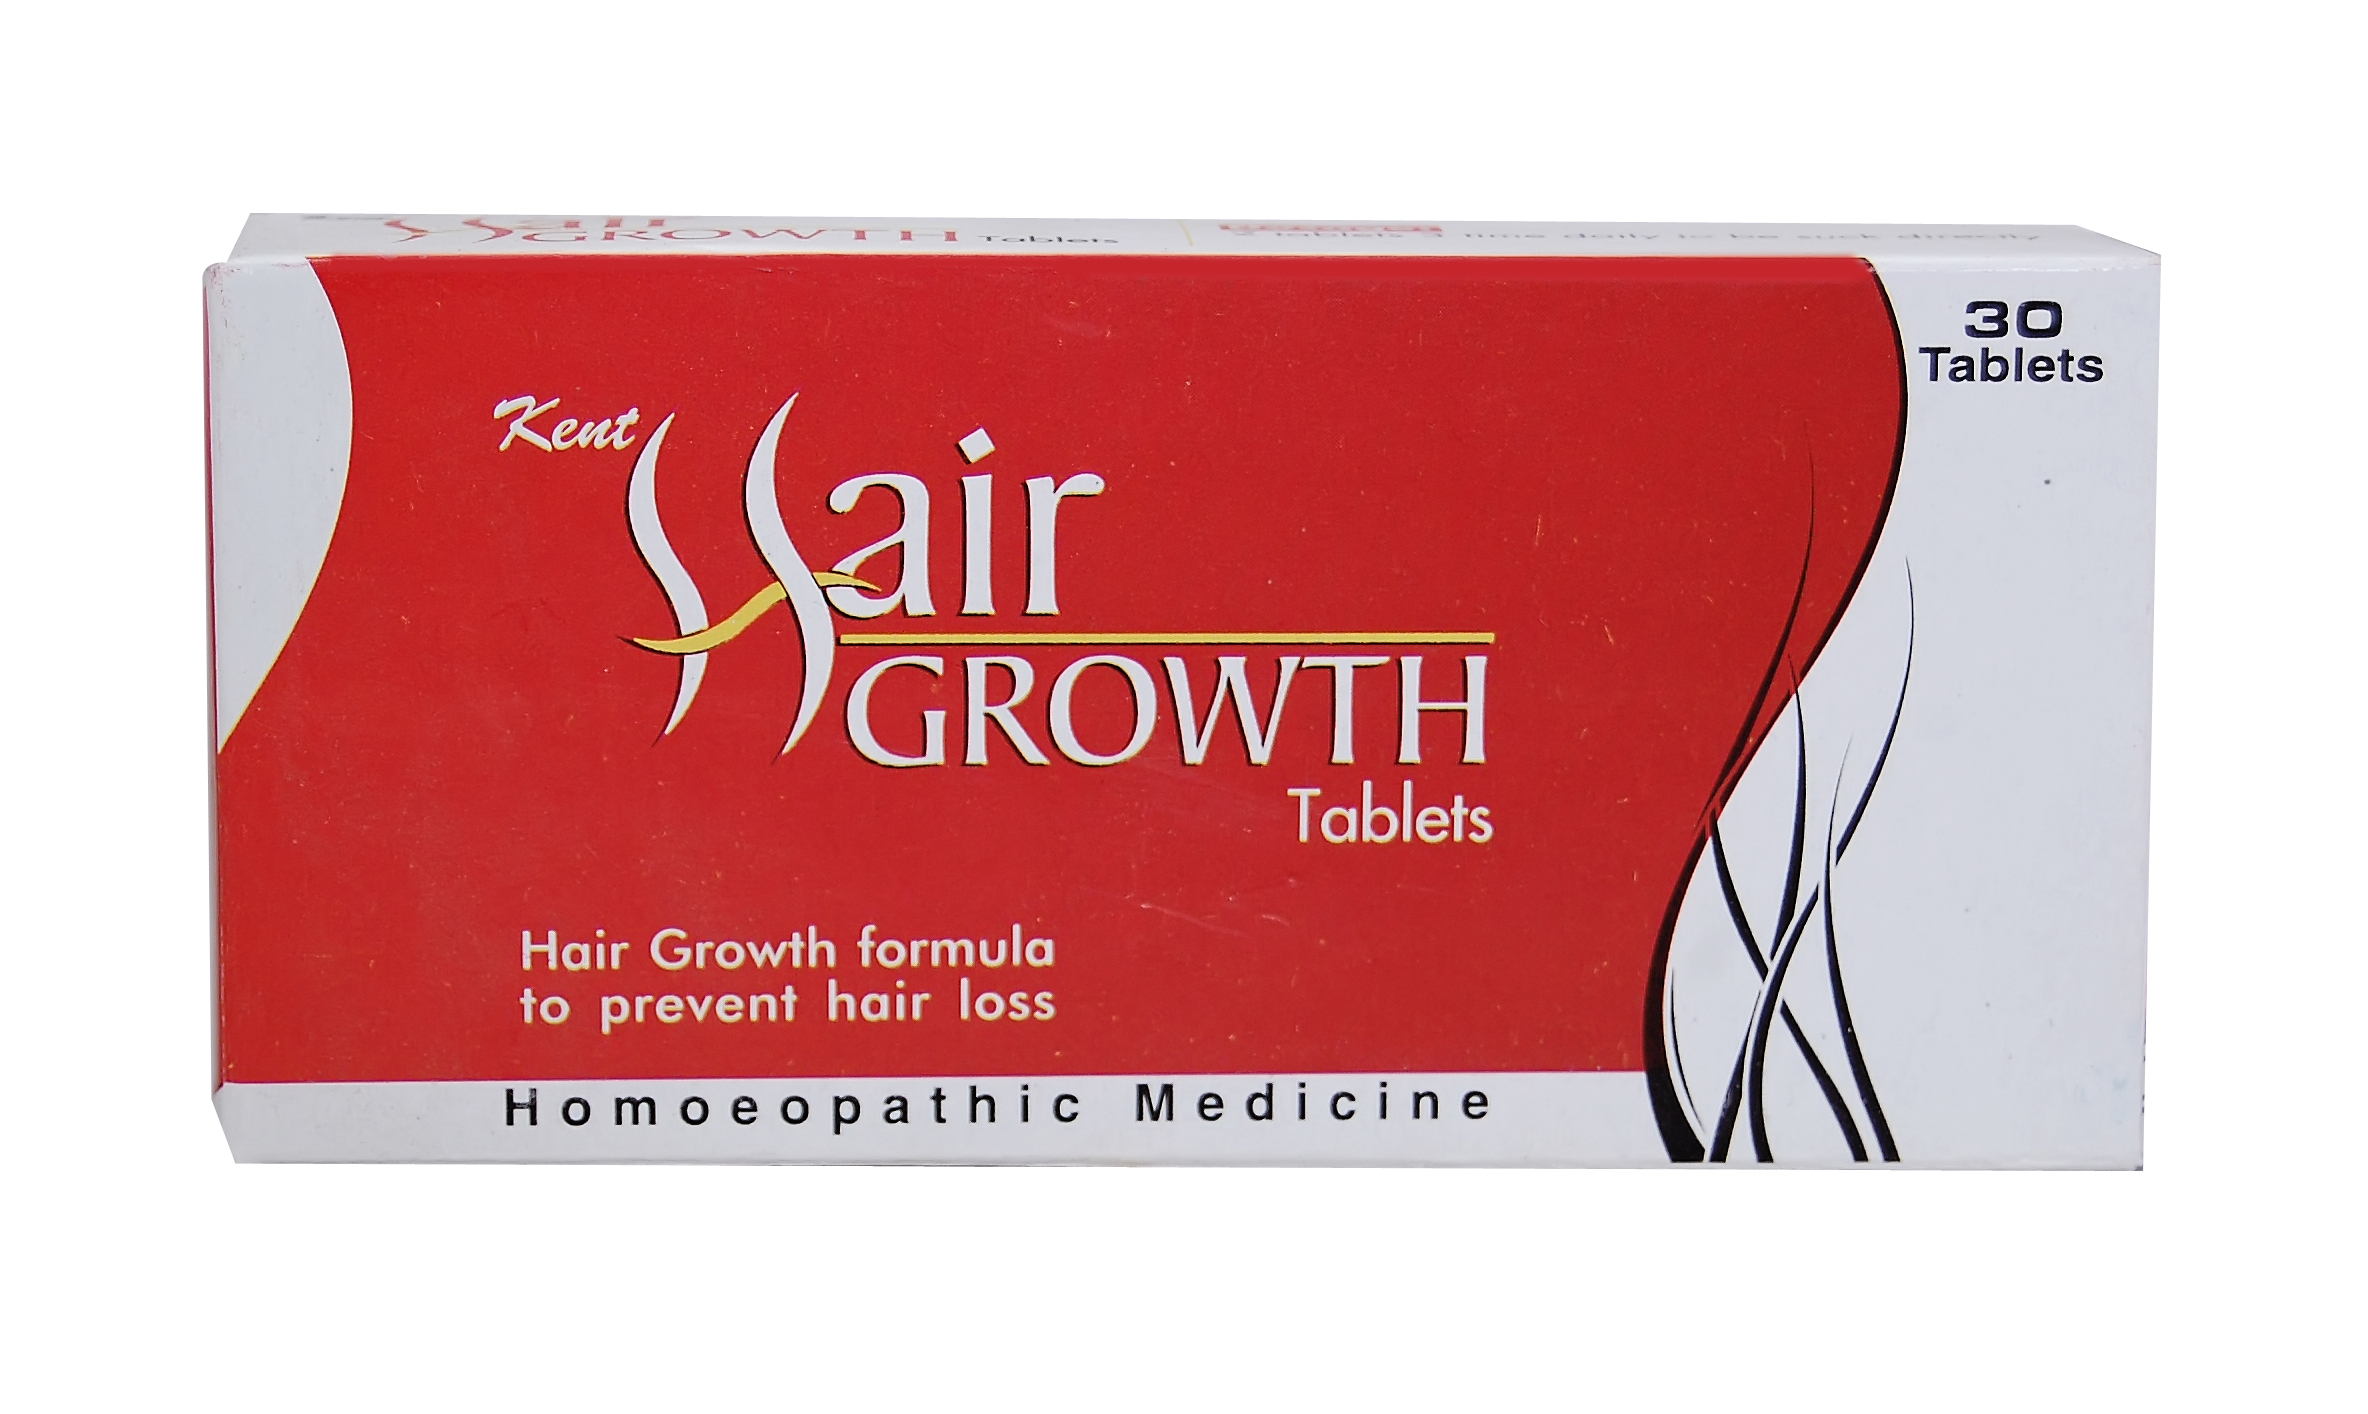 Kent Hair Growth Formula Tablets 30s (hair Growth)